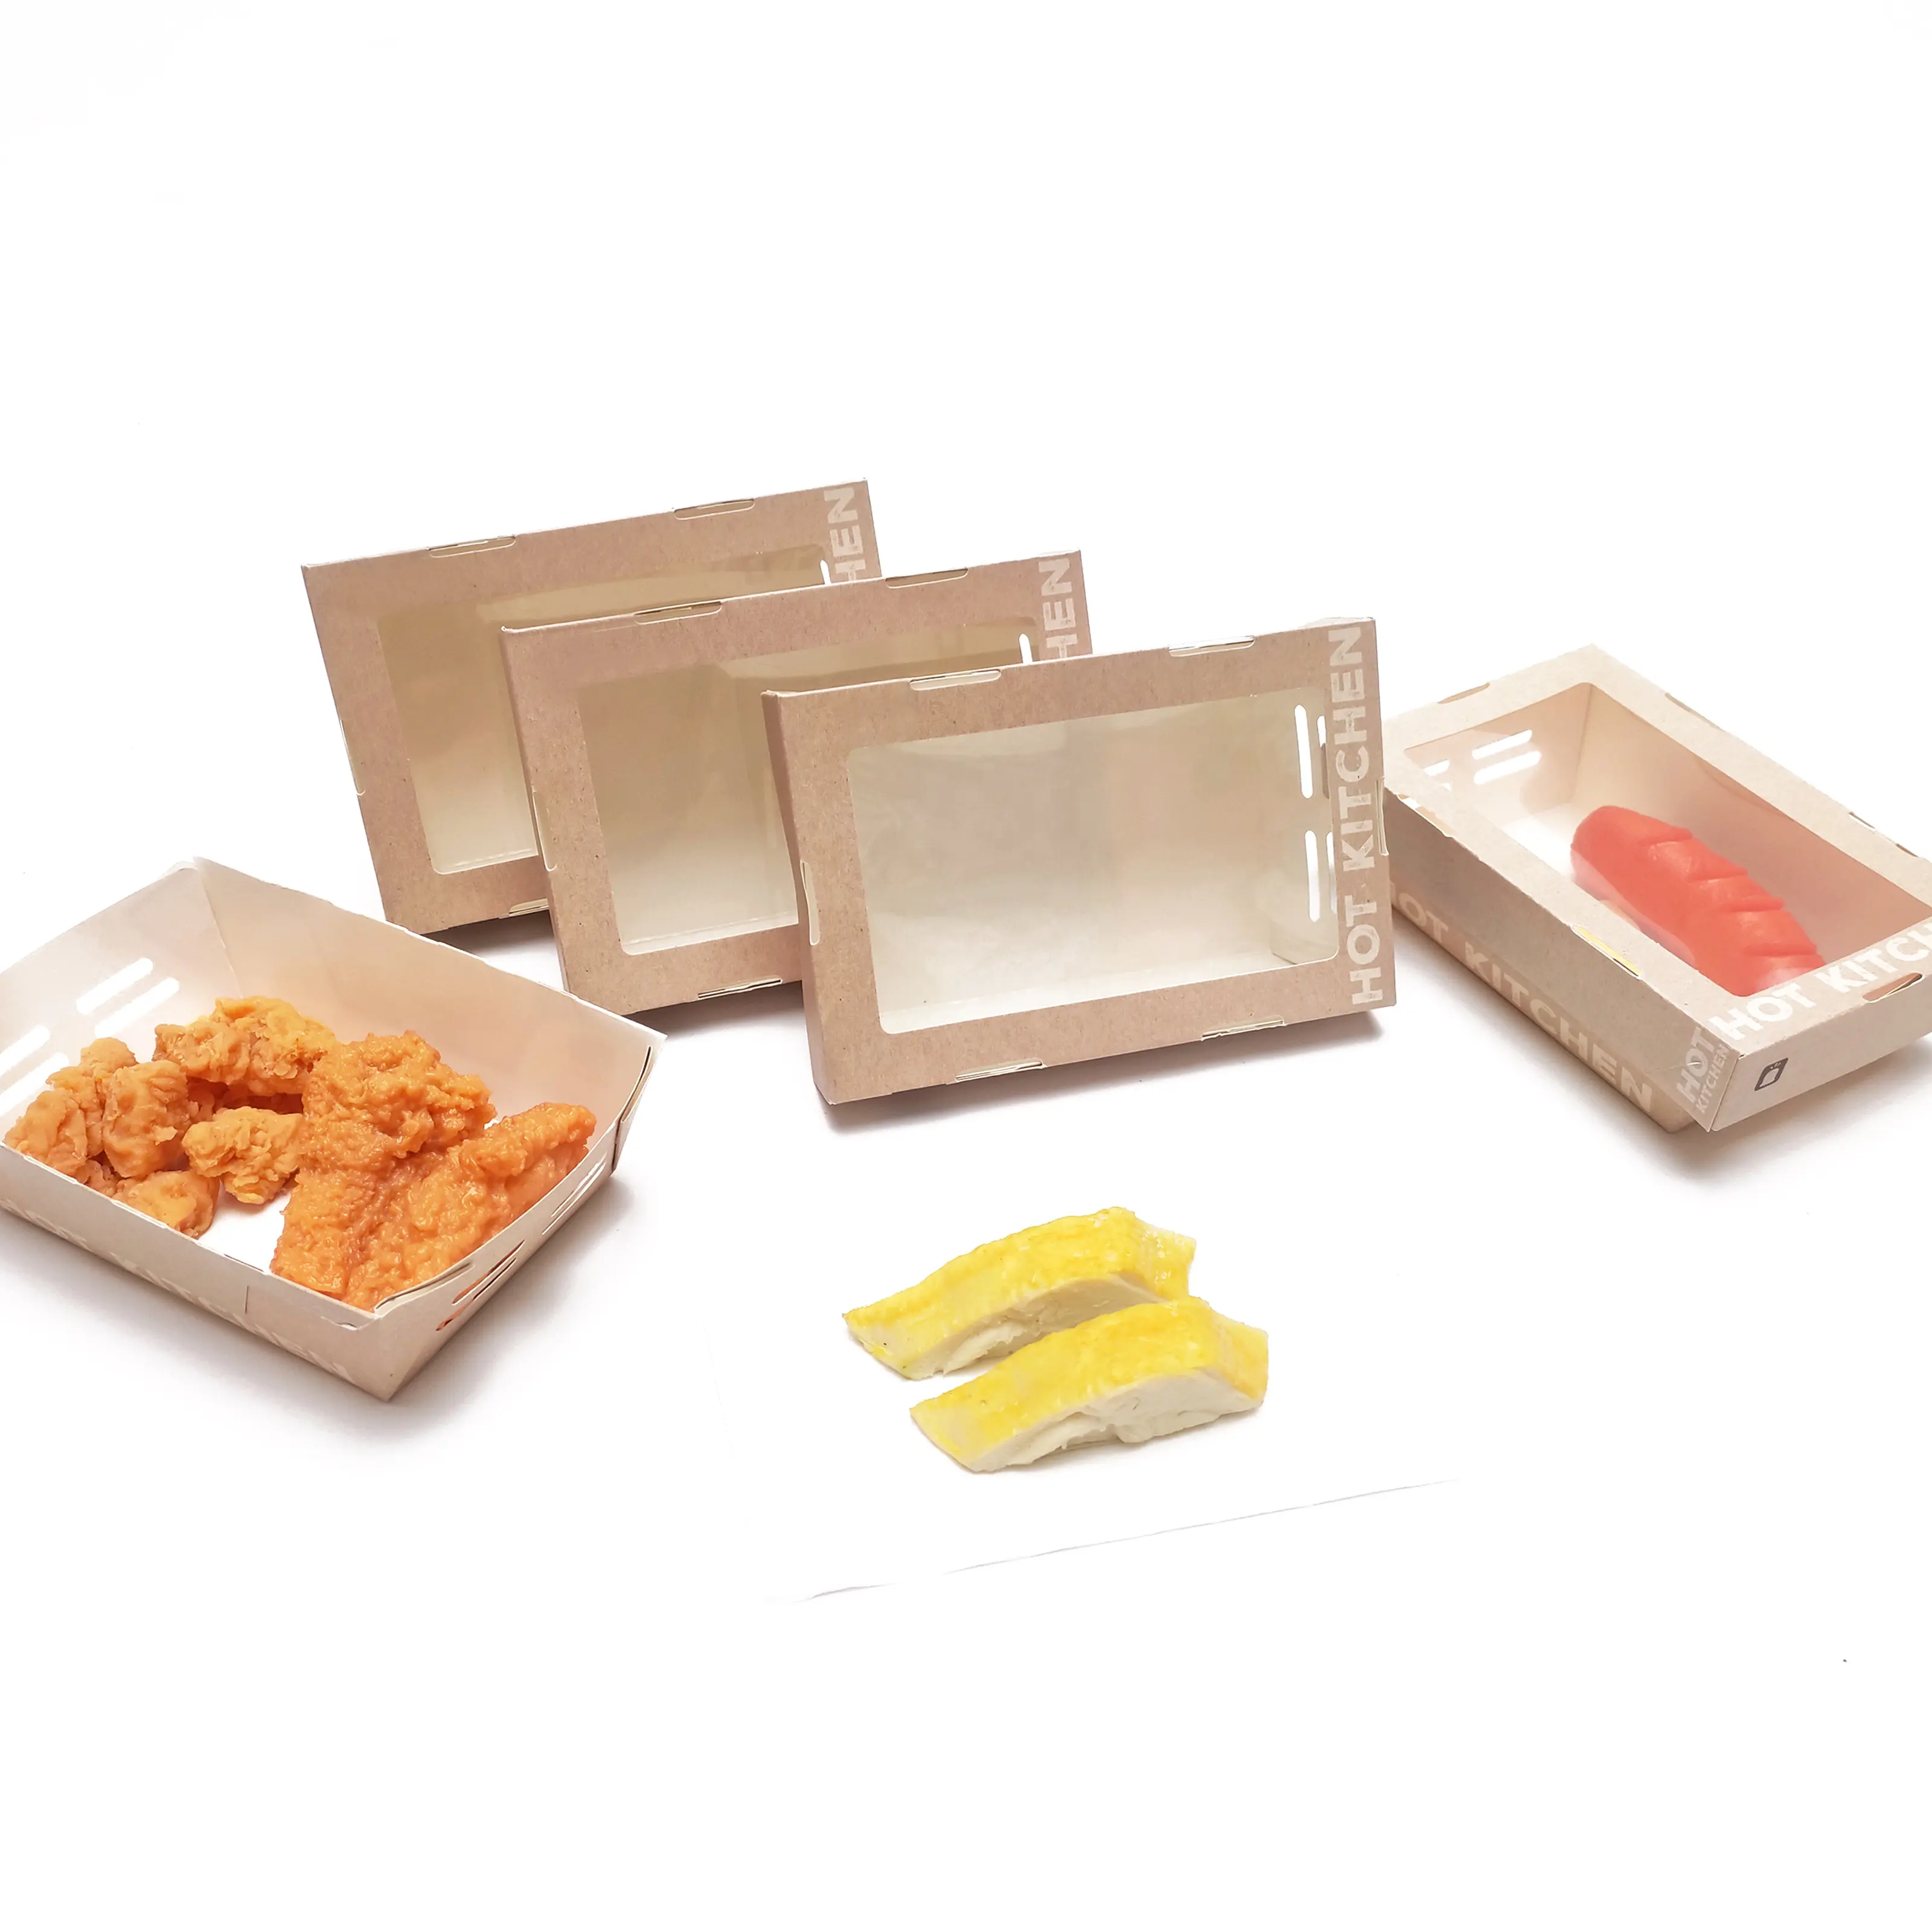 Personalize caixas luxuosas para embalagem takeout de asas de frango frito especial